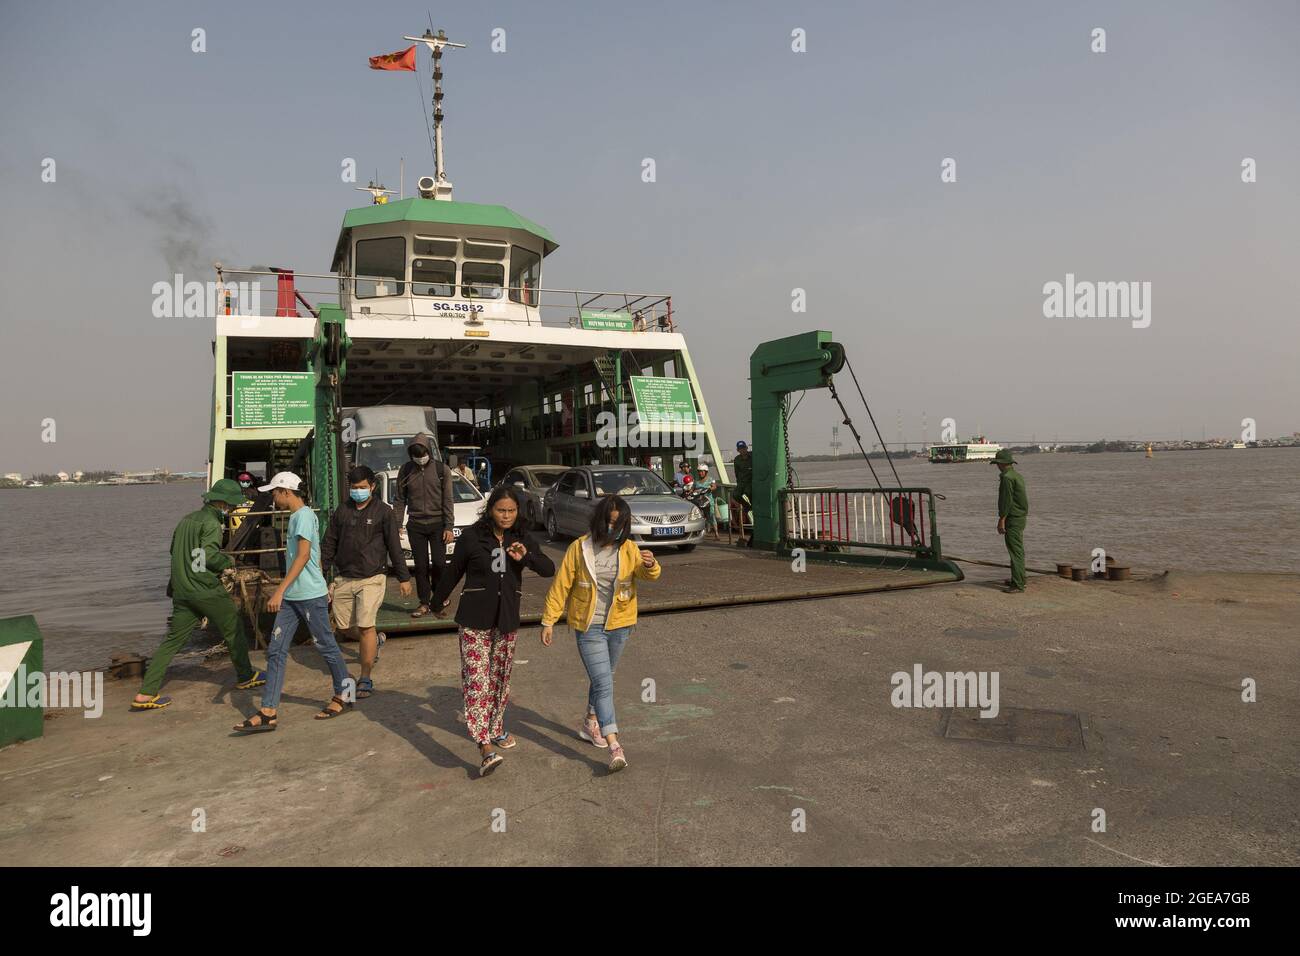 Ferryboat on the Saigon river Stock Photo